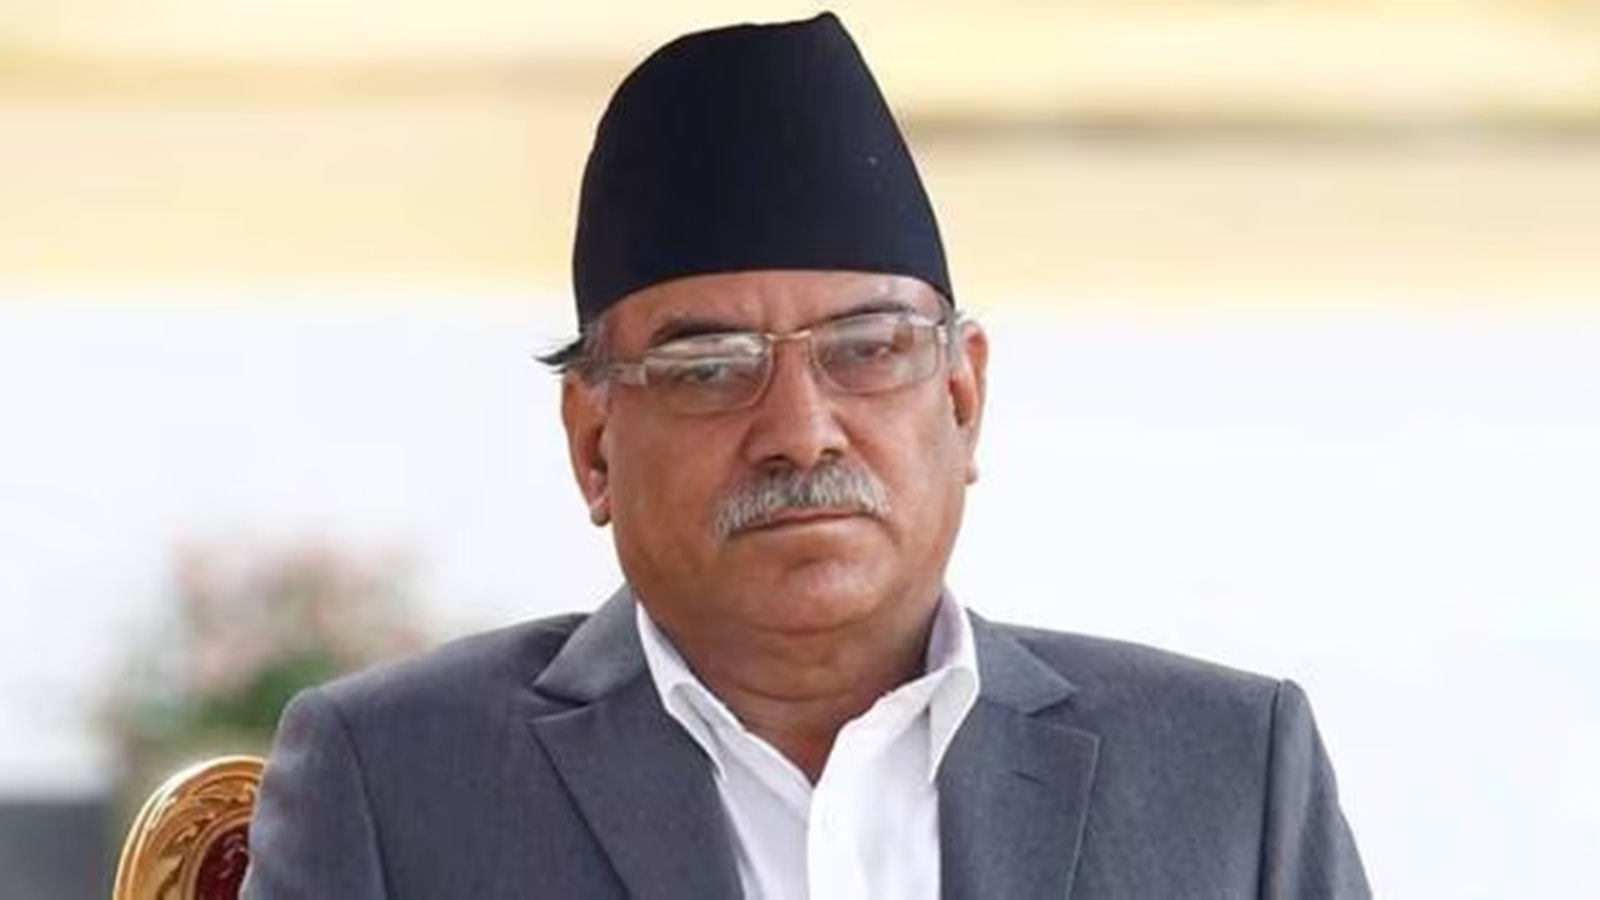 नेपाल के प्रधानमंत्री प्रचंड ने संसद में विश्वास मत हासिल किया